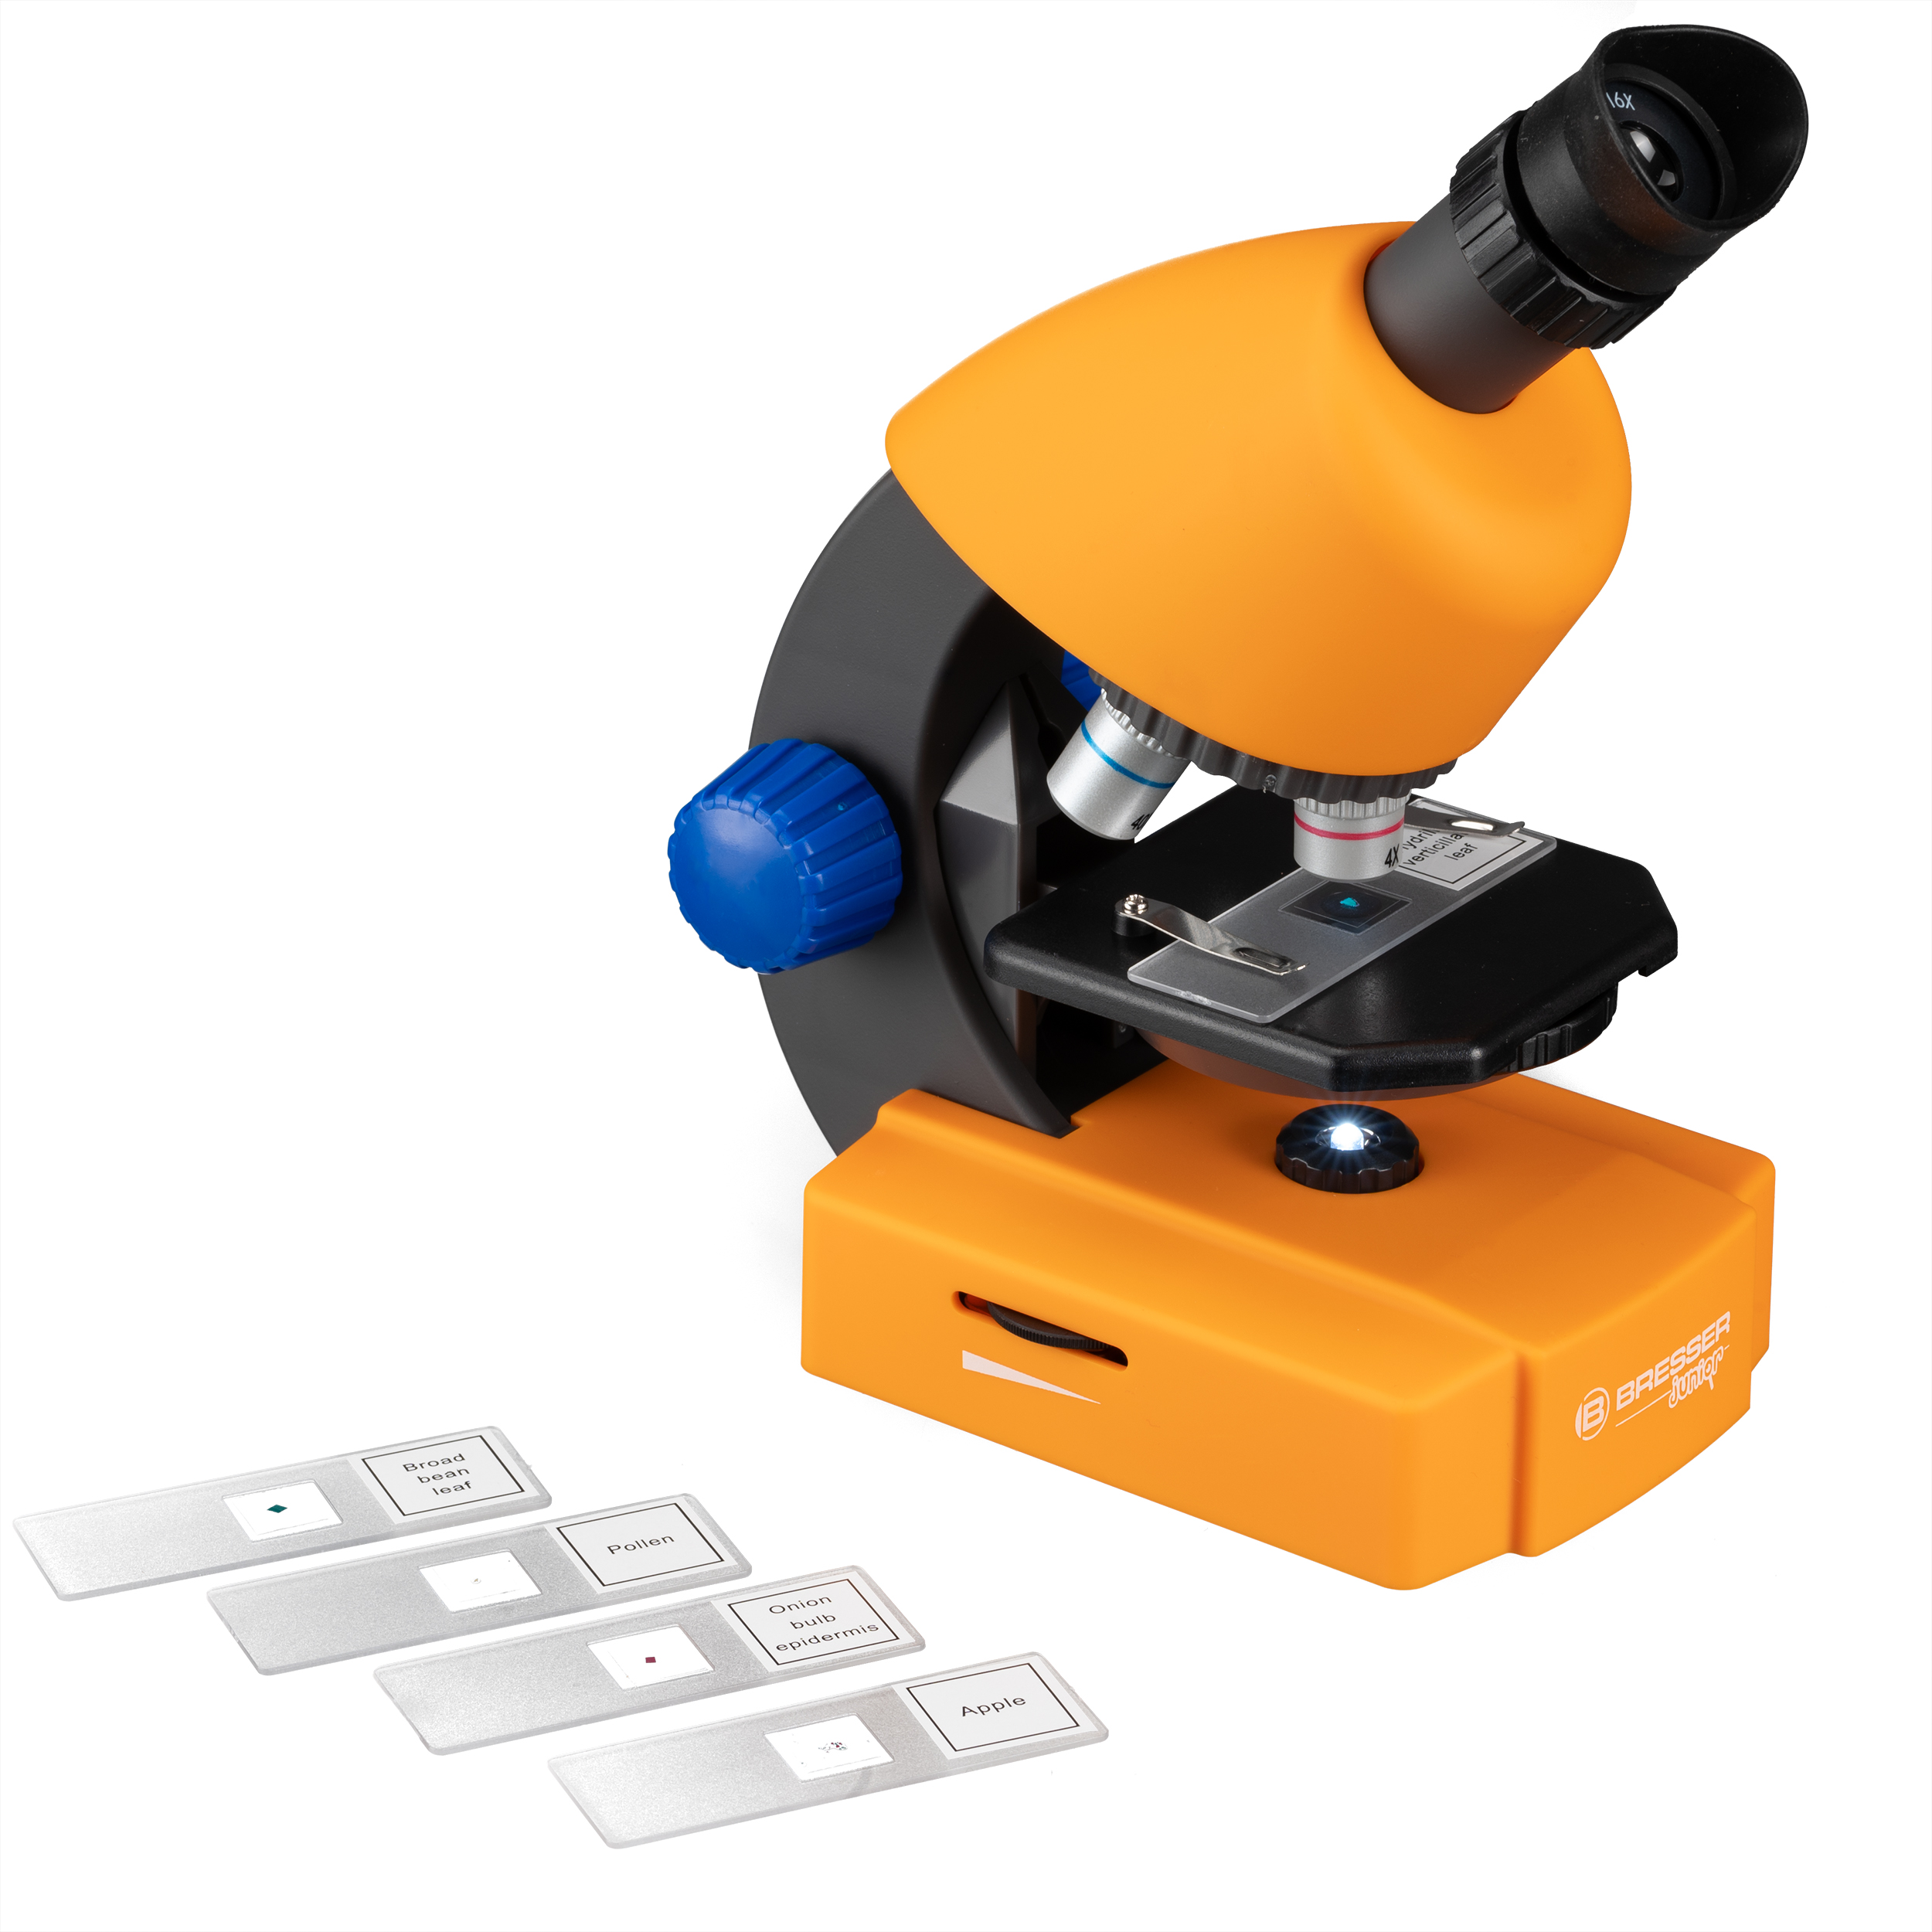 BRESSER JUNIOR Microscopio 40x-640x con complementos y maleta de transporte